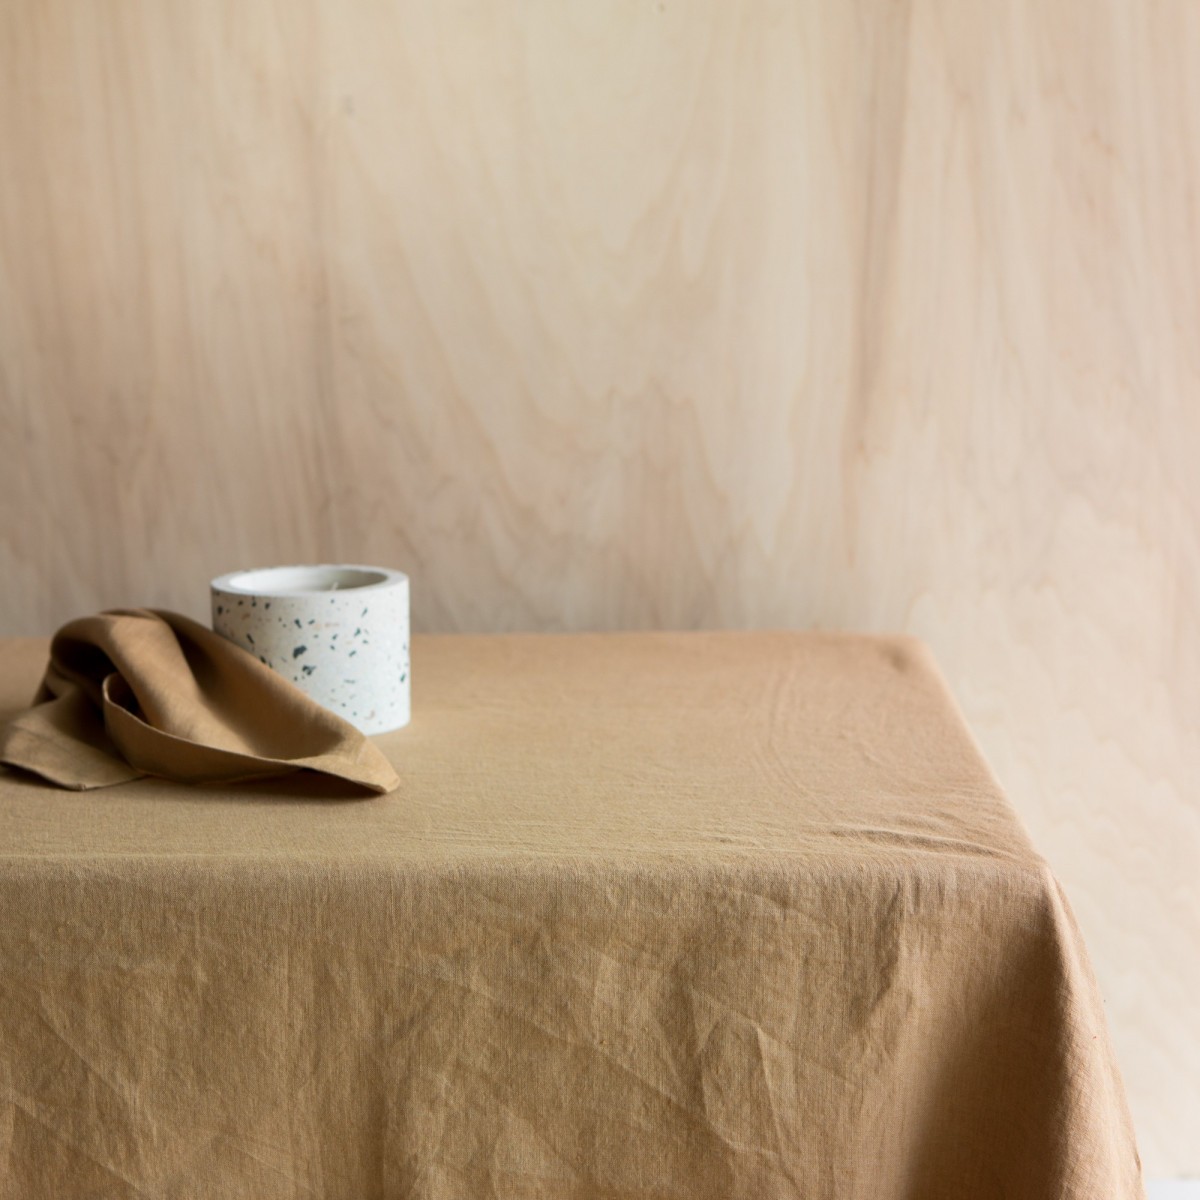 GABRIELLE Nappe ronde en coton et lin Nappe à franges anti-taches Protège- table lavable 140x140cm